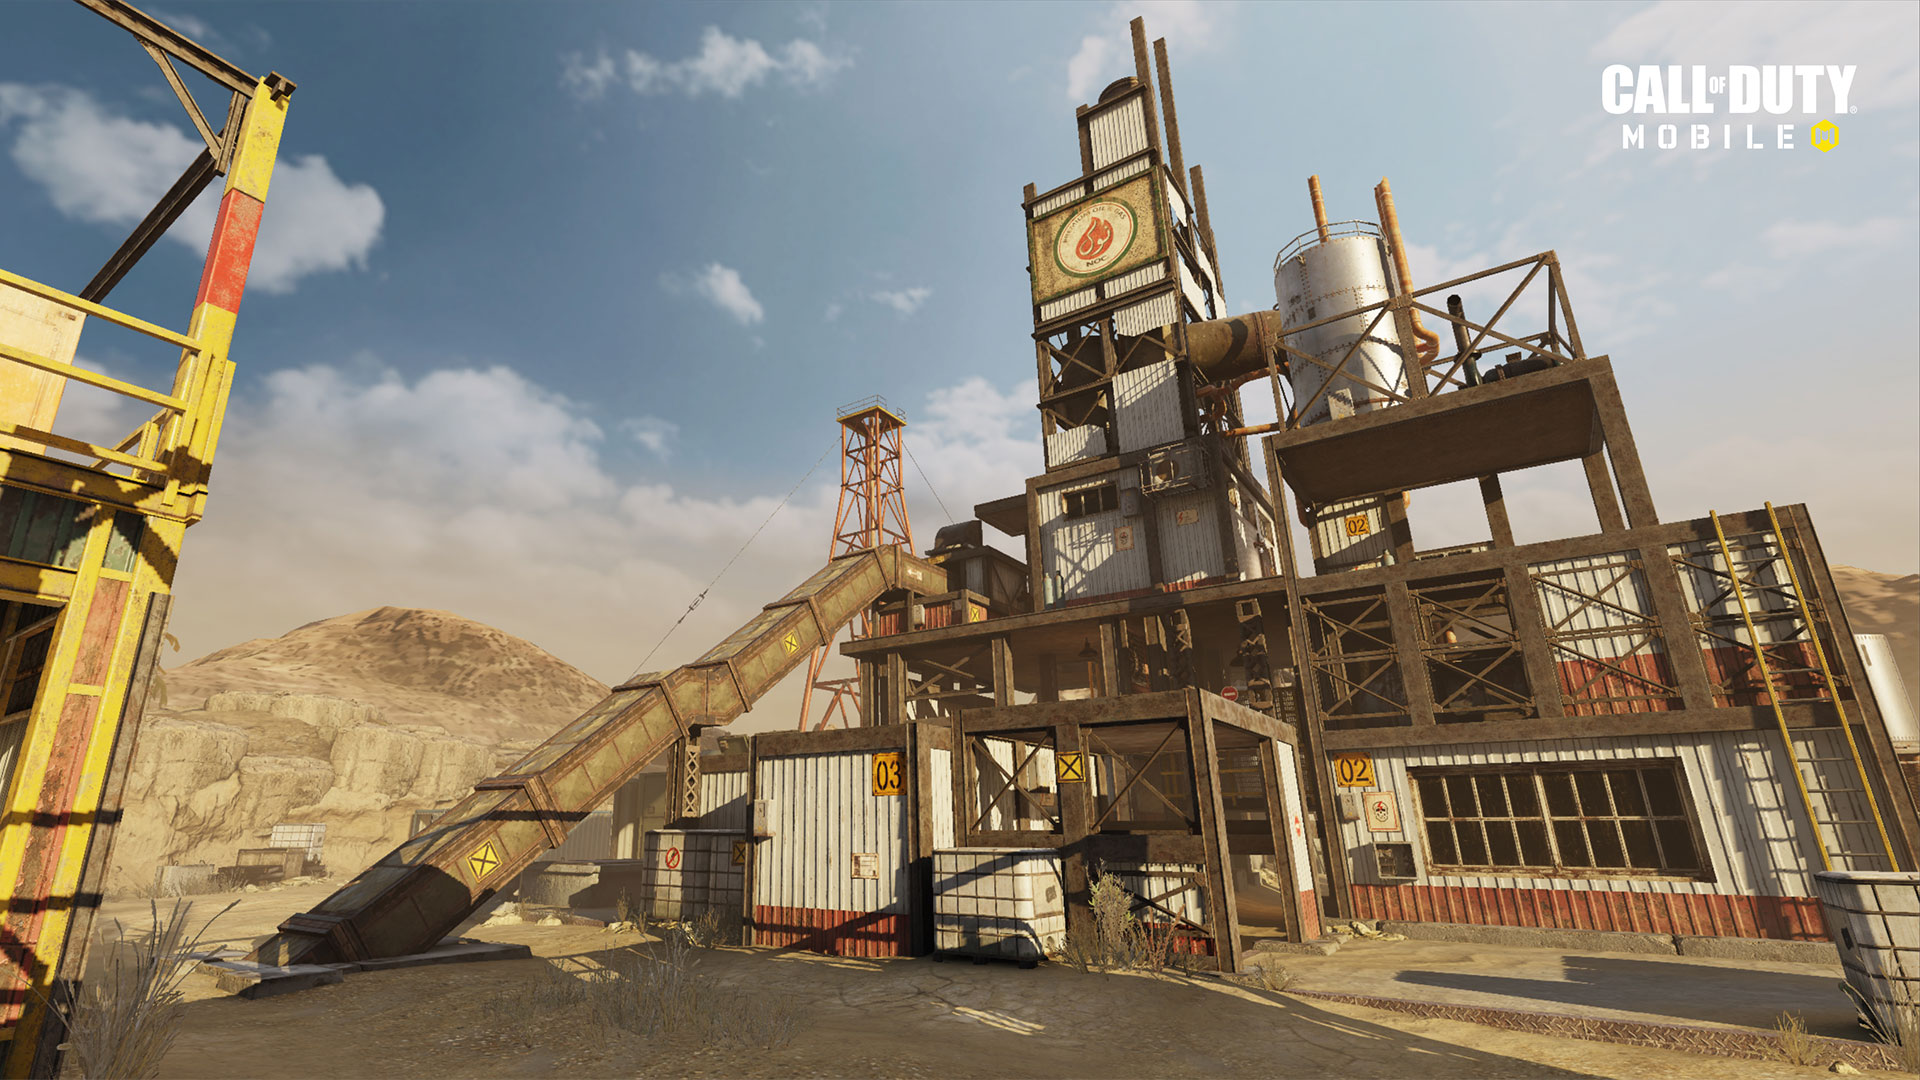 الإصدار 1.0.12 من "Call of Duty: Mobile" متاح الآن بشكل مباشر لتقديم الدعم للموسم التالي "ذات مرة في الصدأ" ، وخرائط جديدة ، وموسم جديد مصنّف ، والمزيد 41